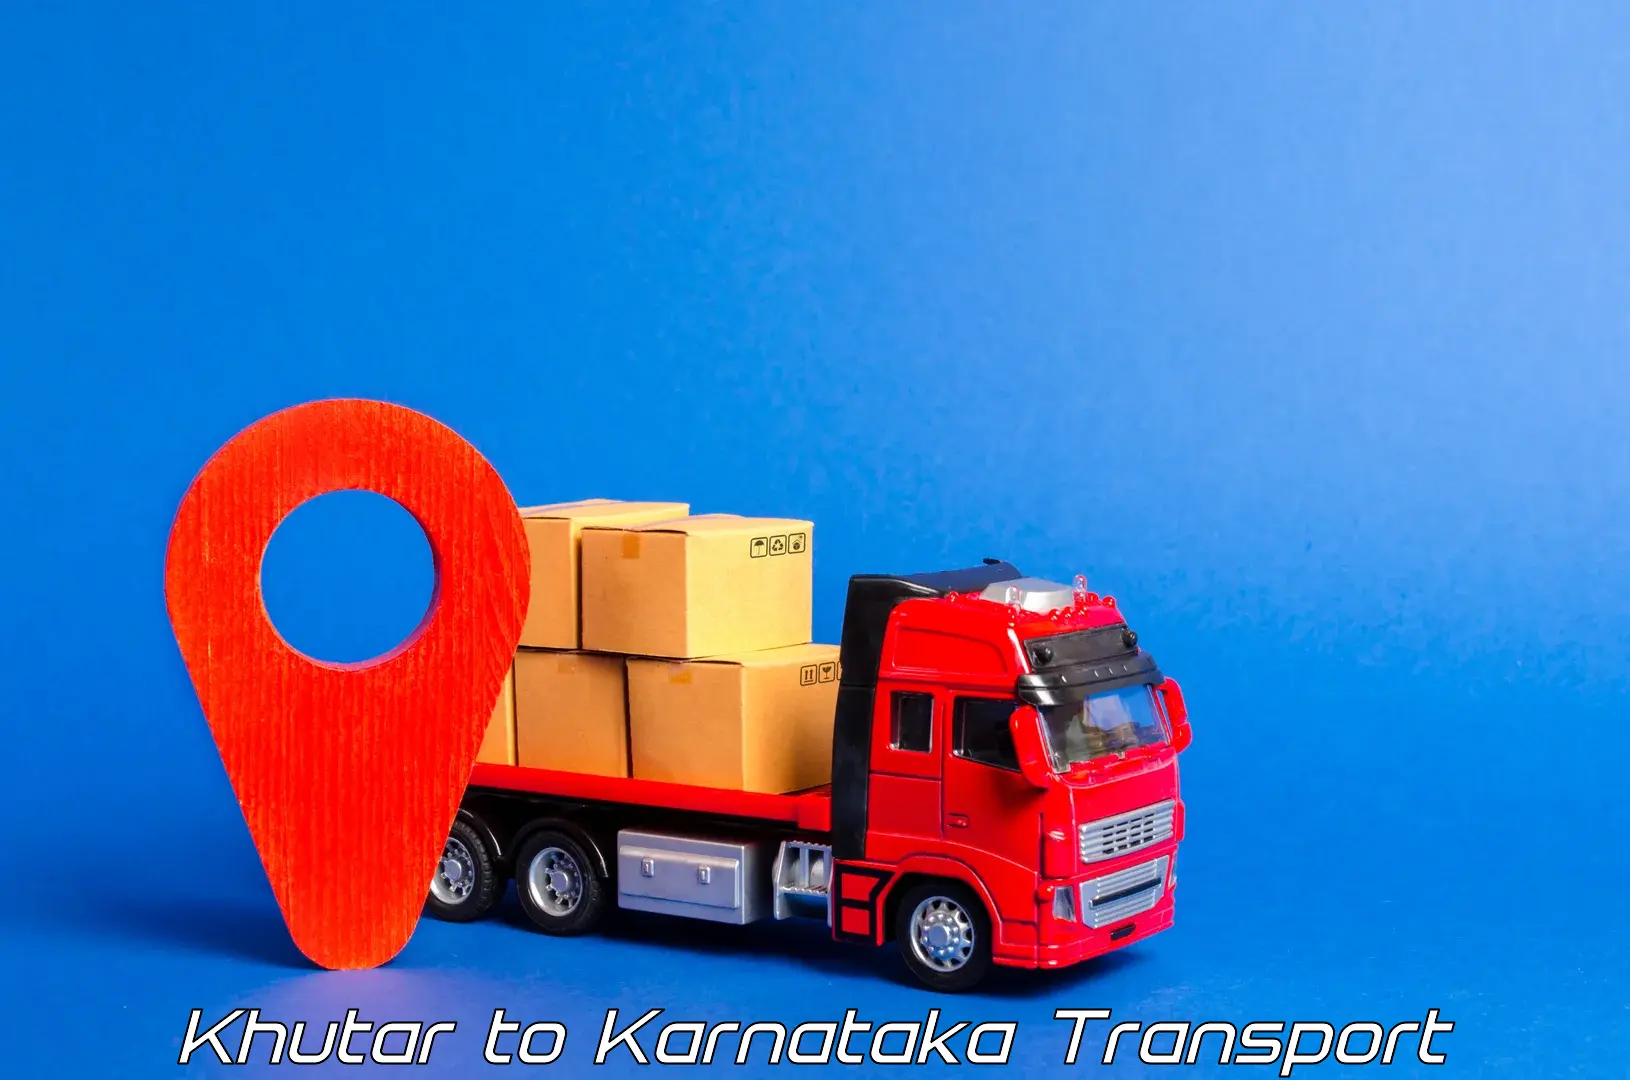 Land transport services Khutar to Vitla